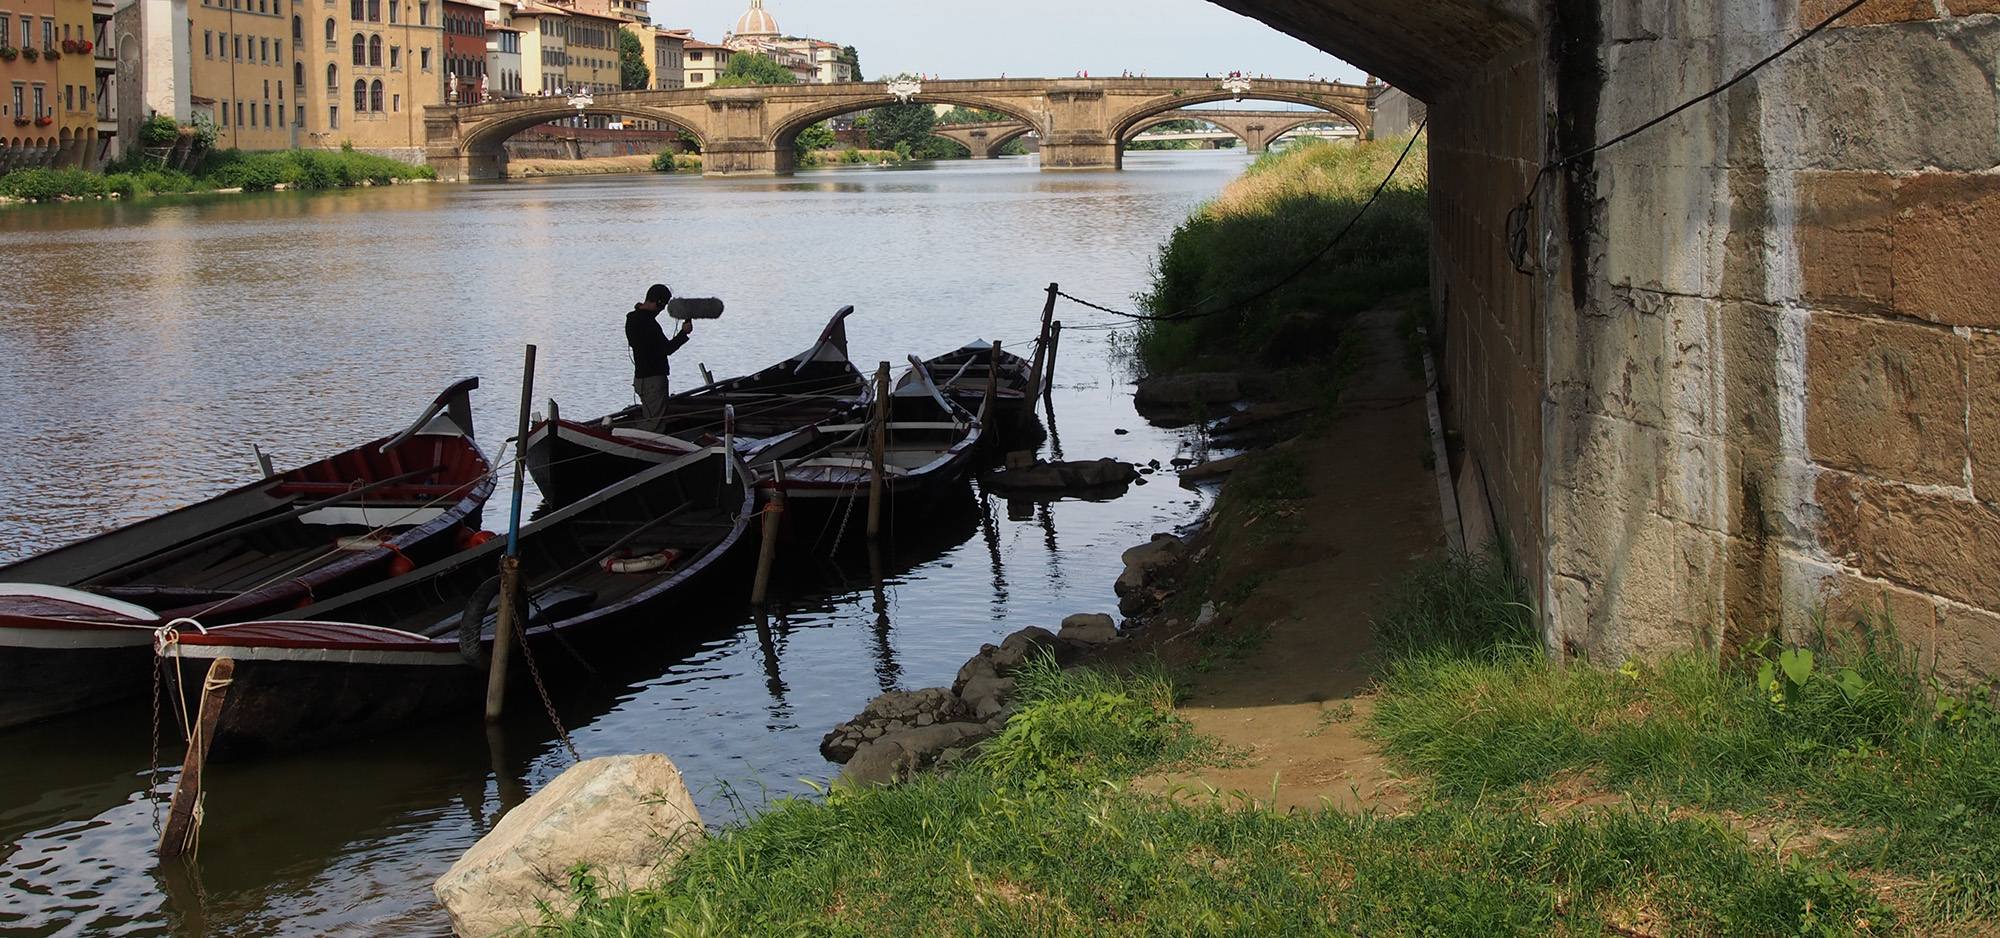 Giulio Aldinucci live at taking field recordings under Ponte Vecchio. Firenze - July 2013